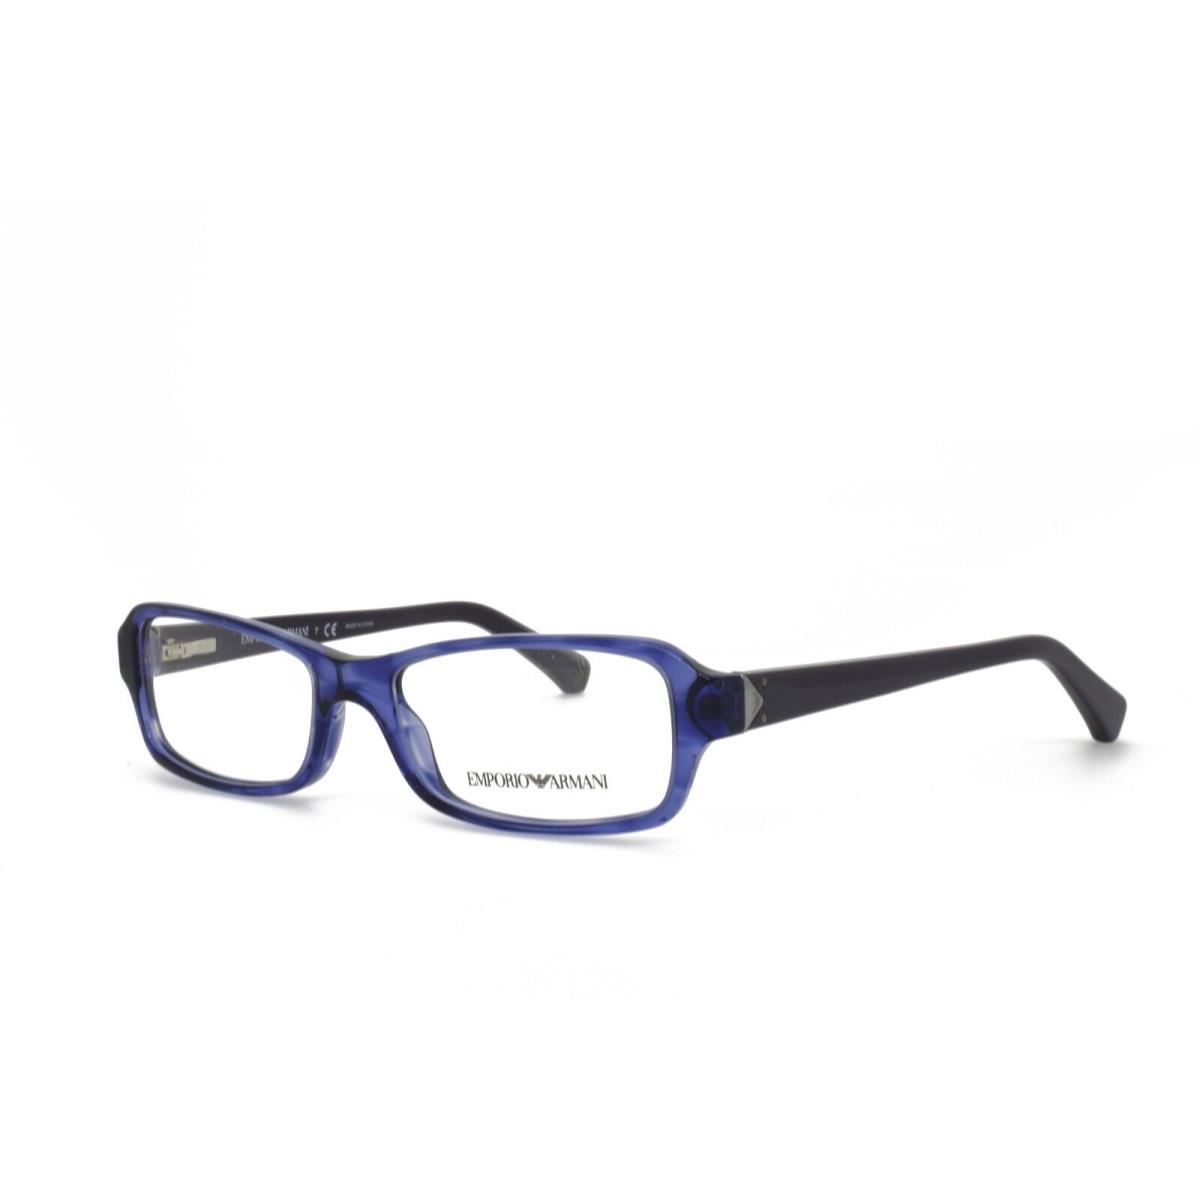 Emporio Armani 3016 5098 51-16-135 Purple Eyeglasses Frames